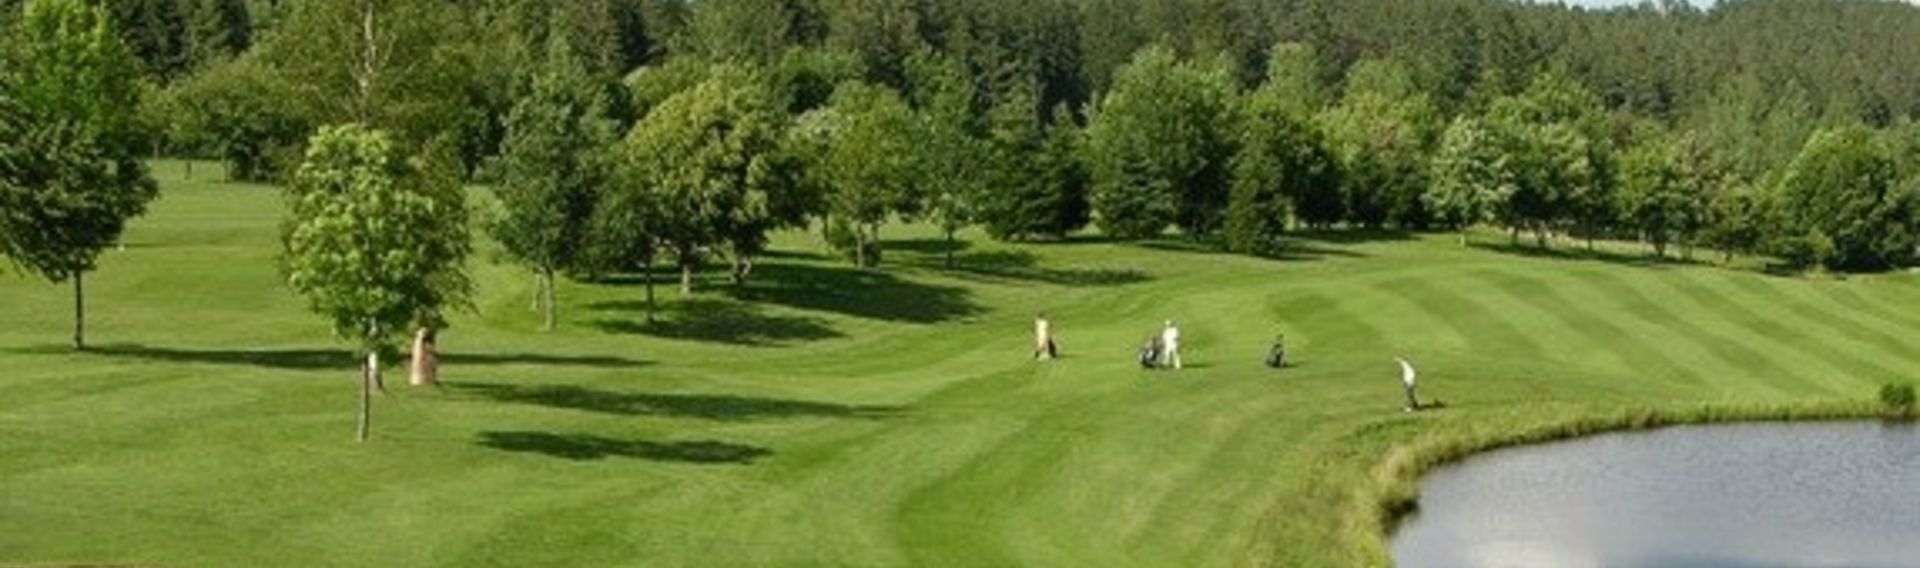 Golfen Schwarzwald – Golfclub finden in der Natur, Schnupperkurse